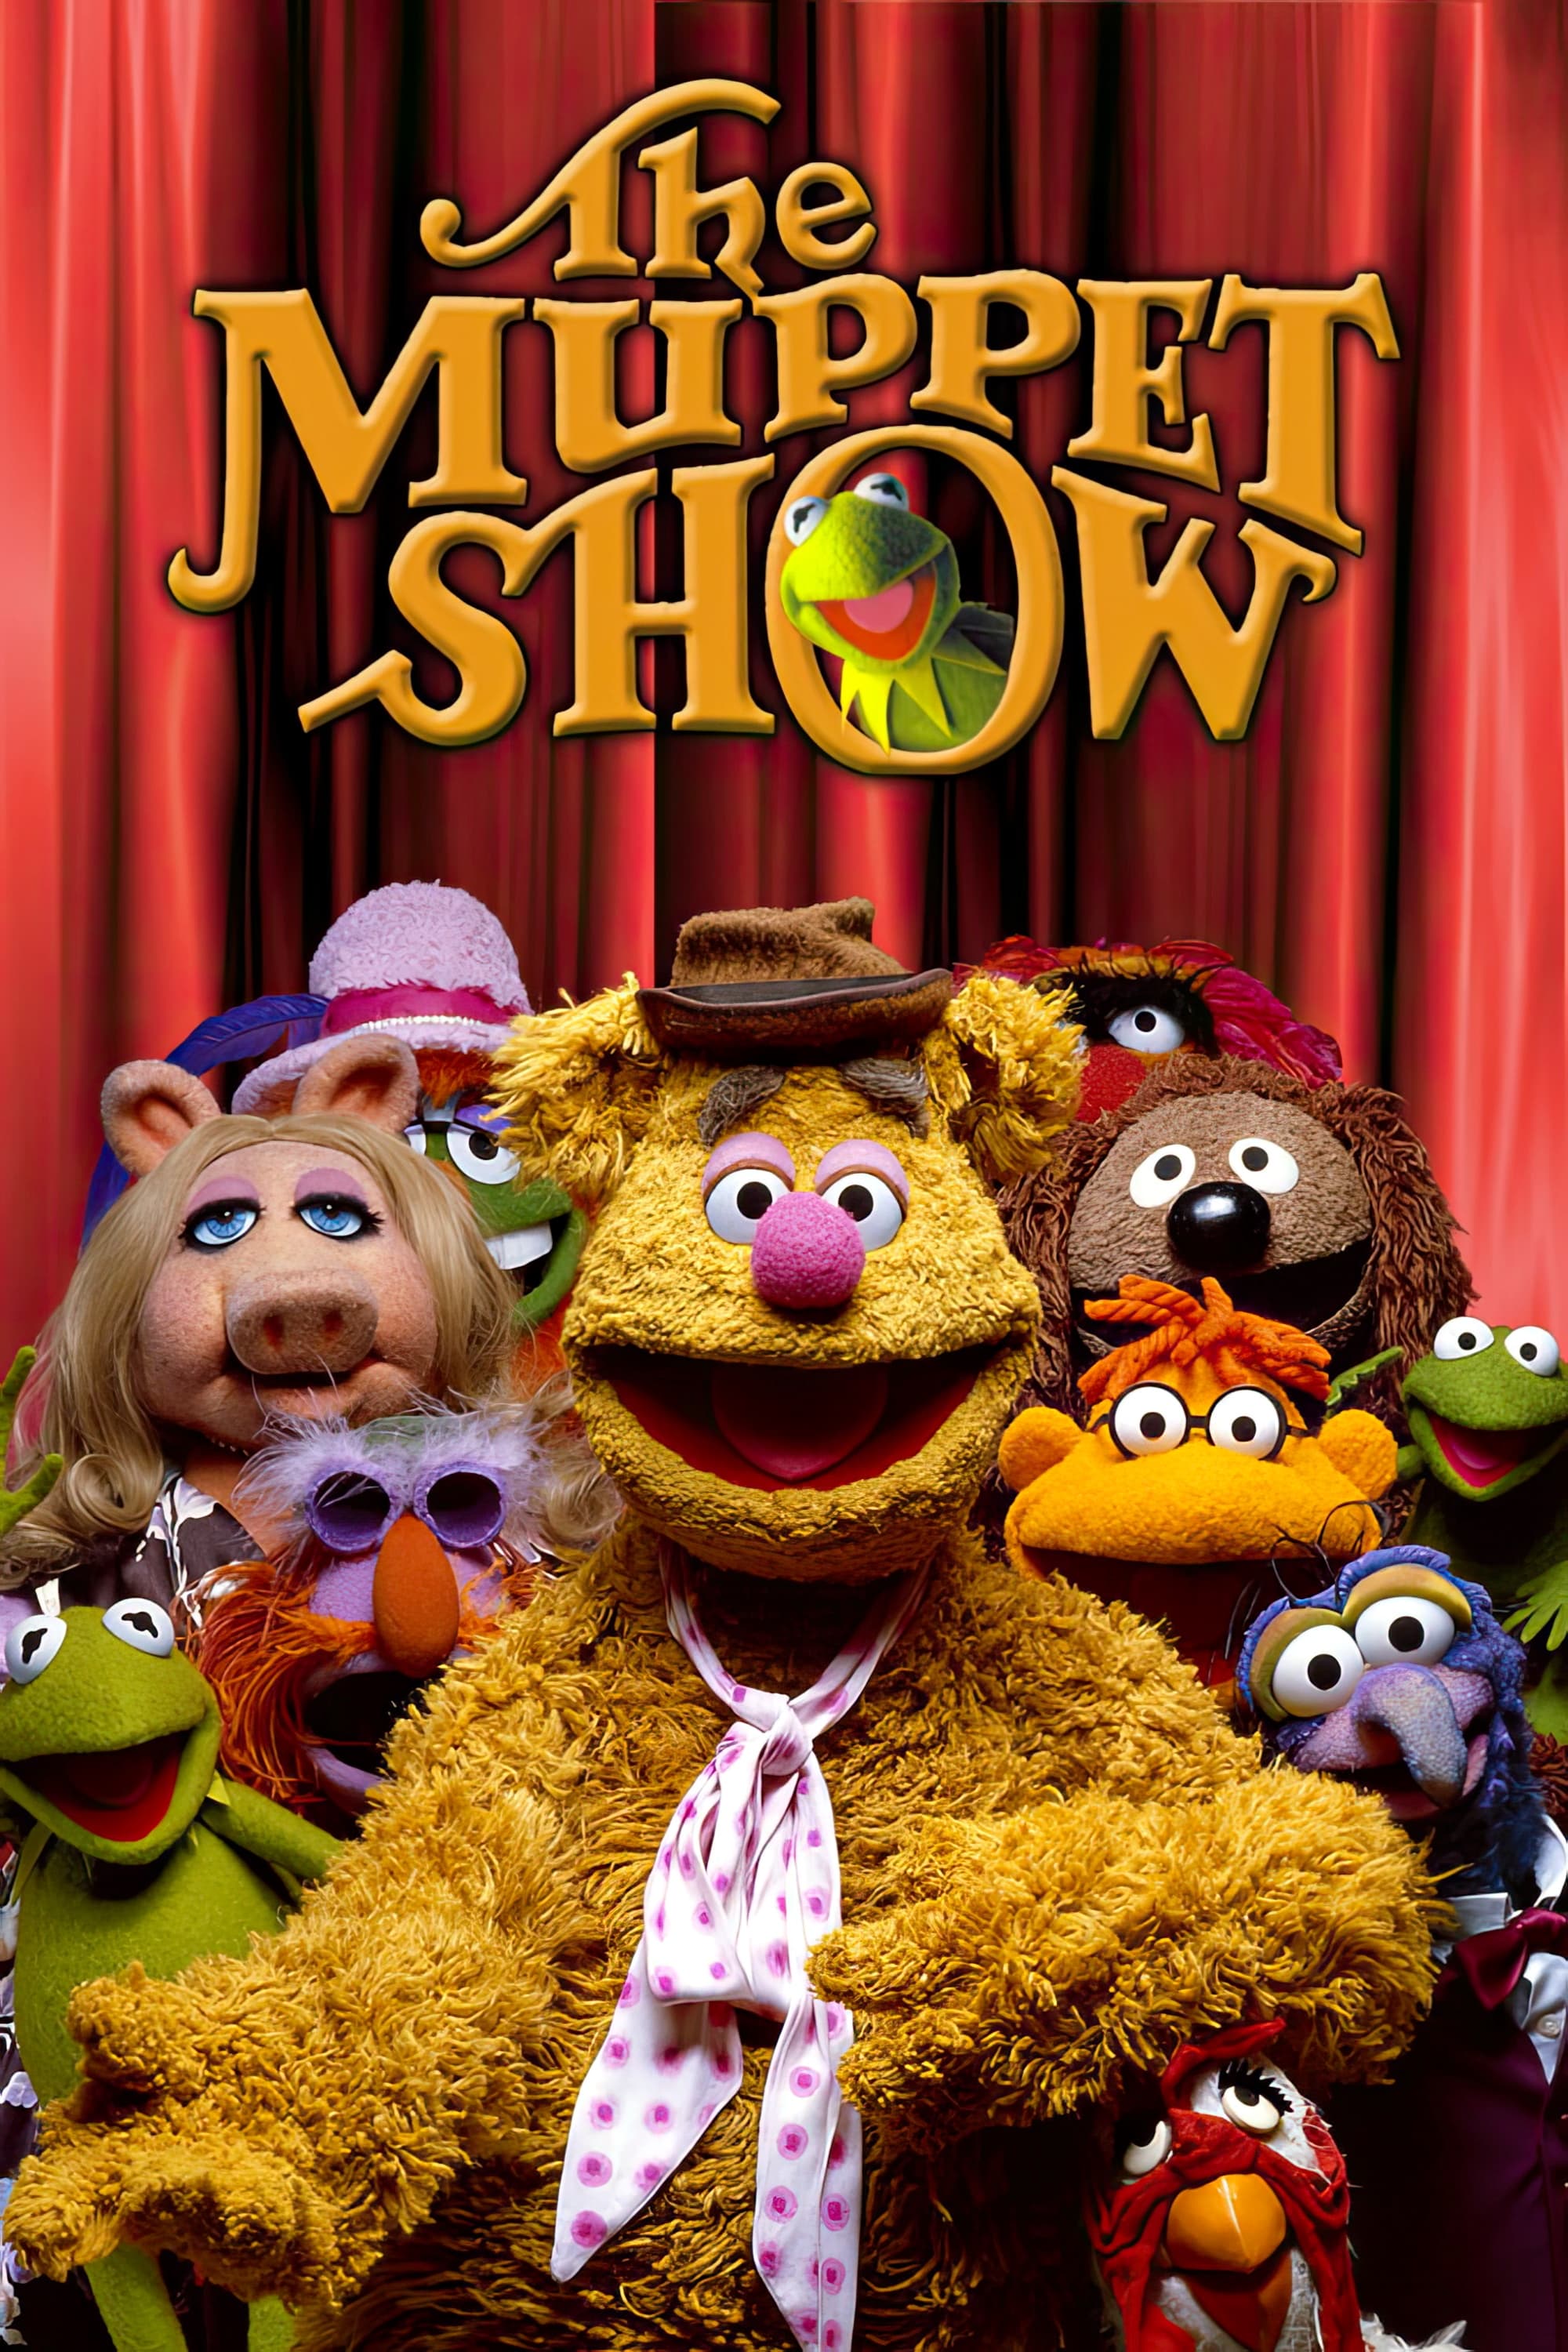 Die Muppet Show